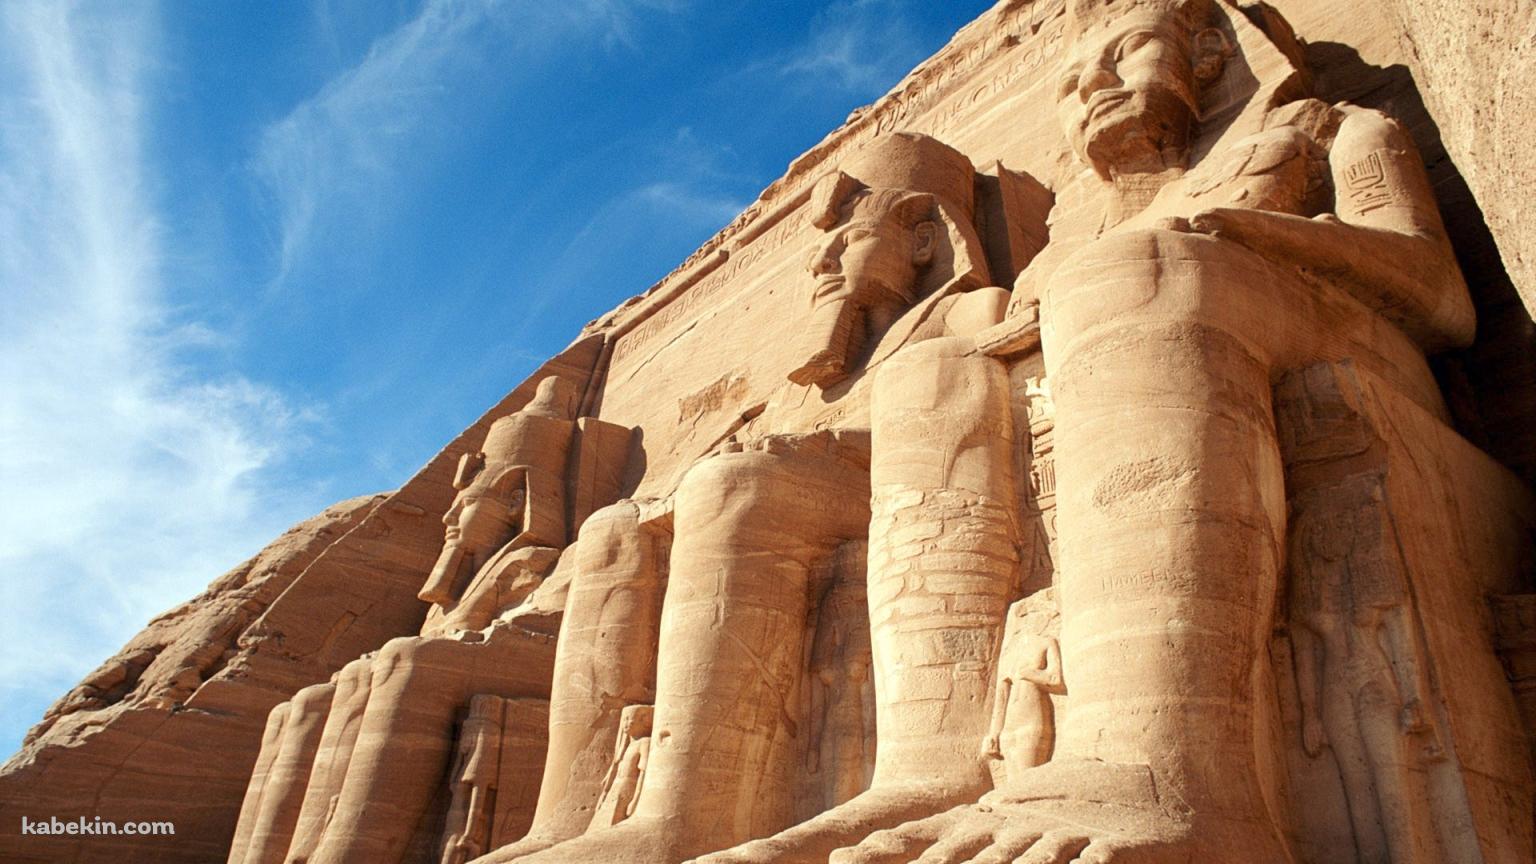 エジプトの寺院の壁紙(1536px x 864px) 高画質 PC・デスクトップ用